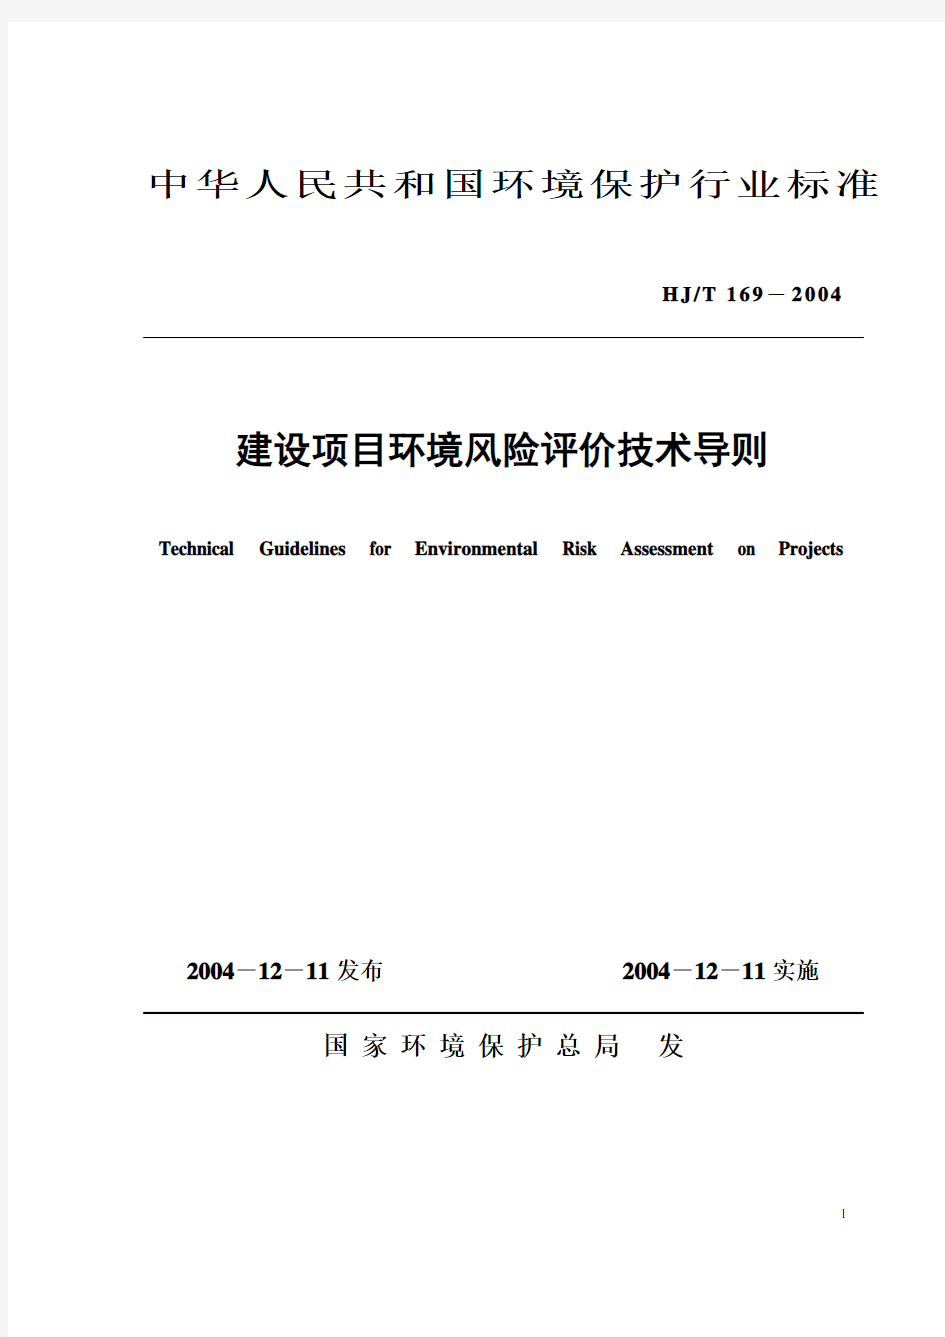 中华人民共和国环境保护行业标准